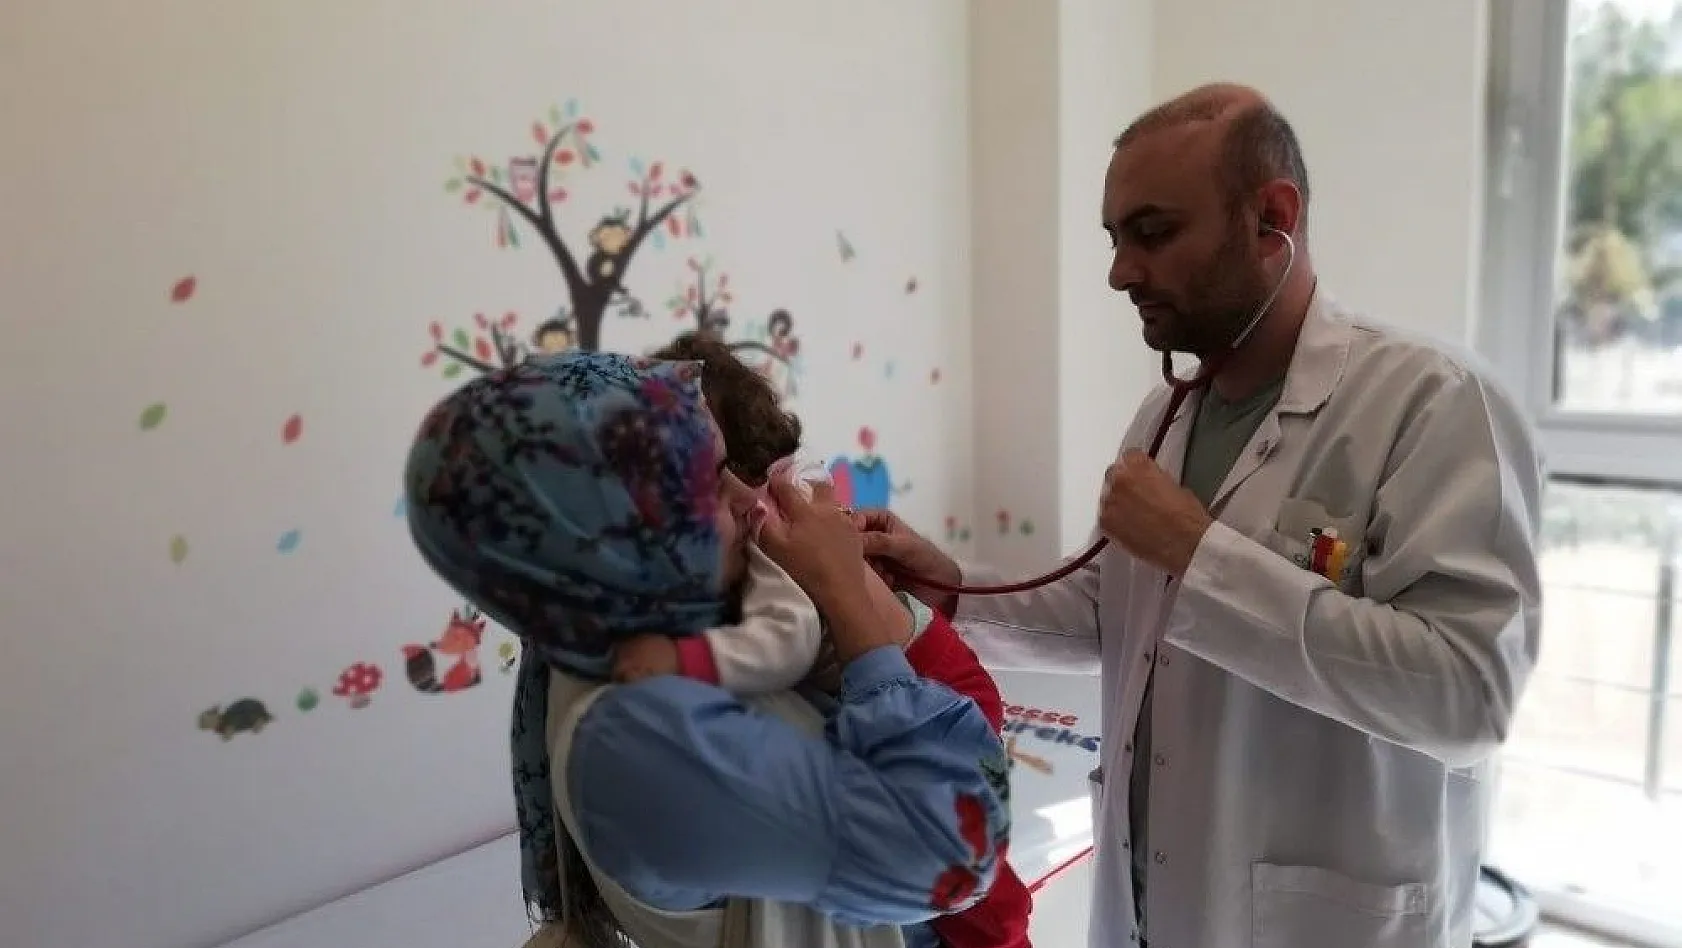 Yeşilhisar İlçe Devlet Hastanesinde Çocuk Sağlığı ve Hastalıkları Uzmanı Göreve Başladı
